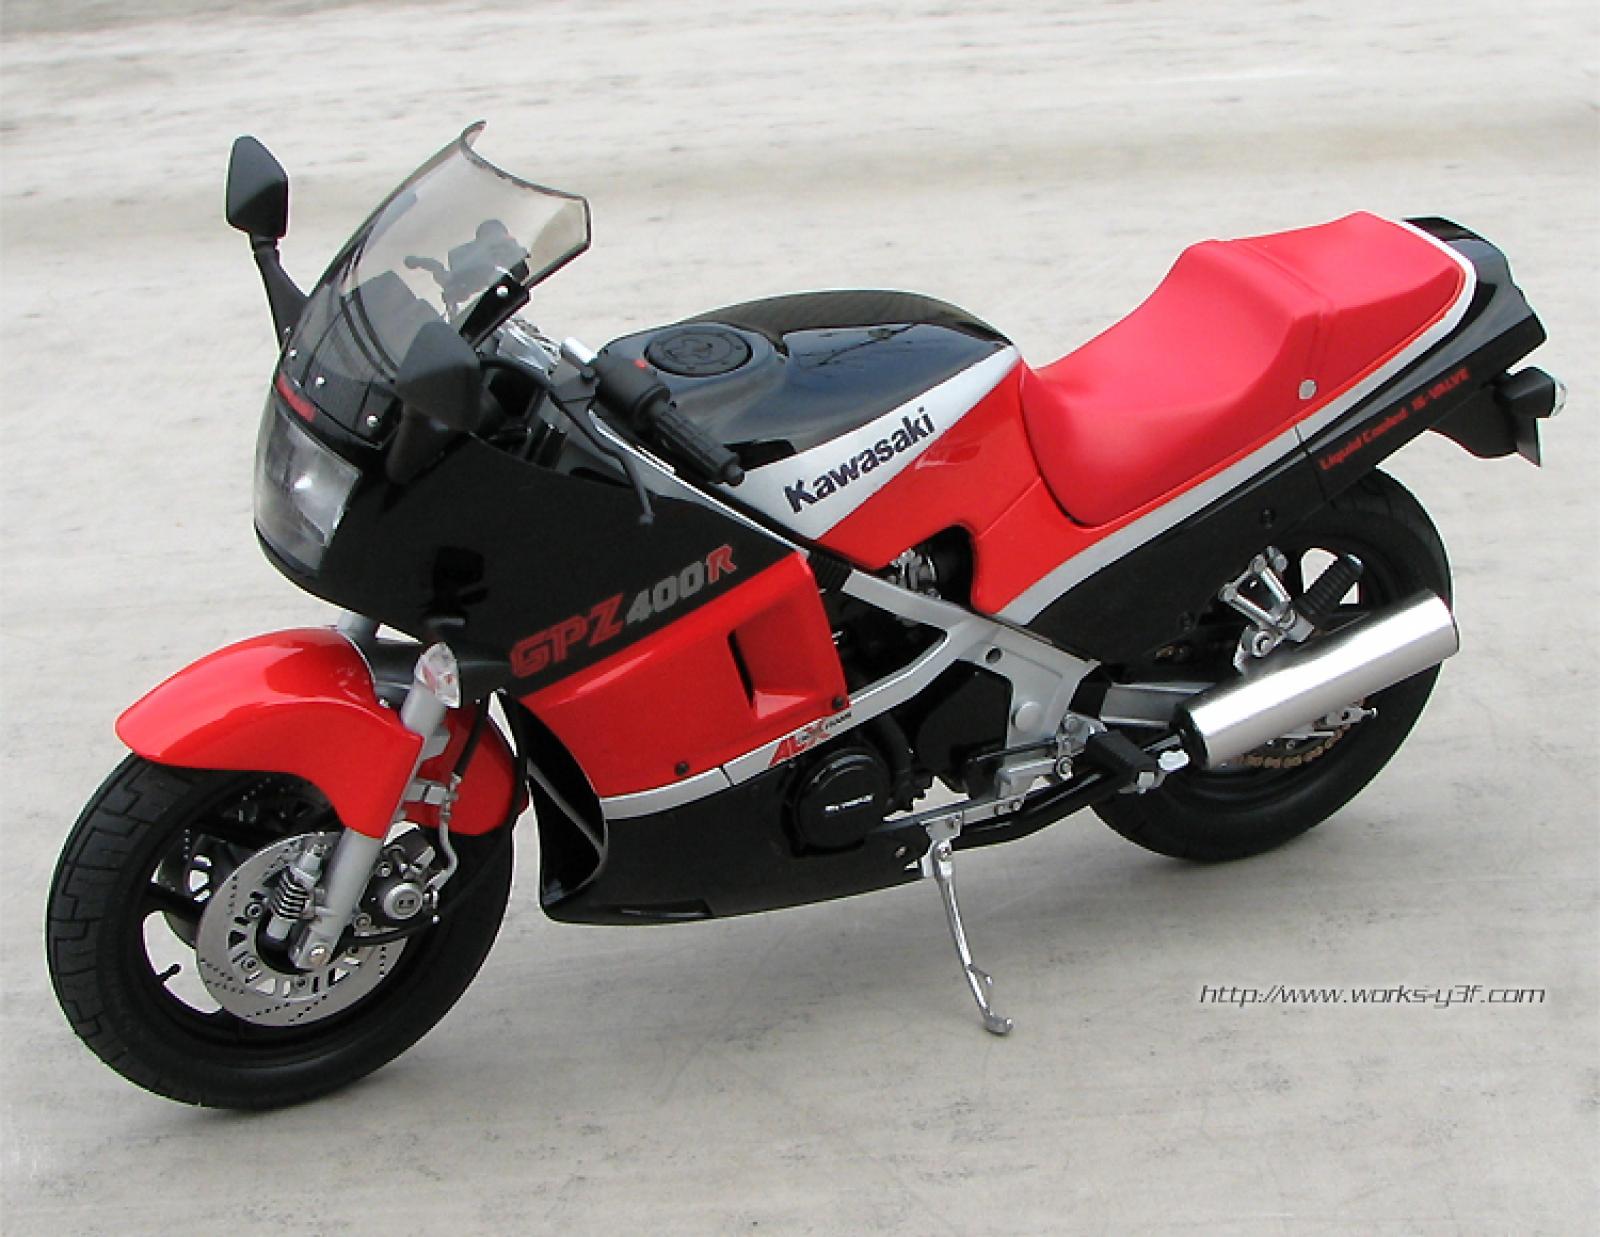 Kawasaki gpz 600 r - frwiki.wiki